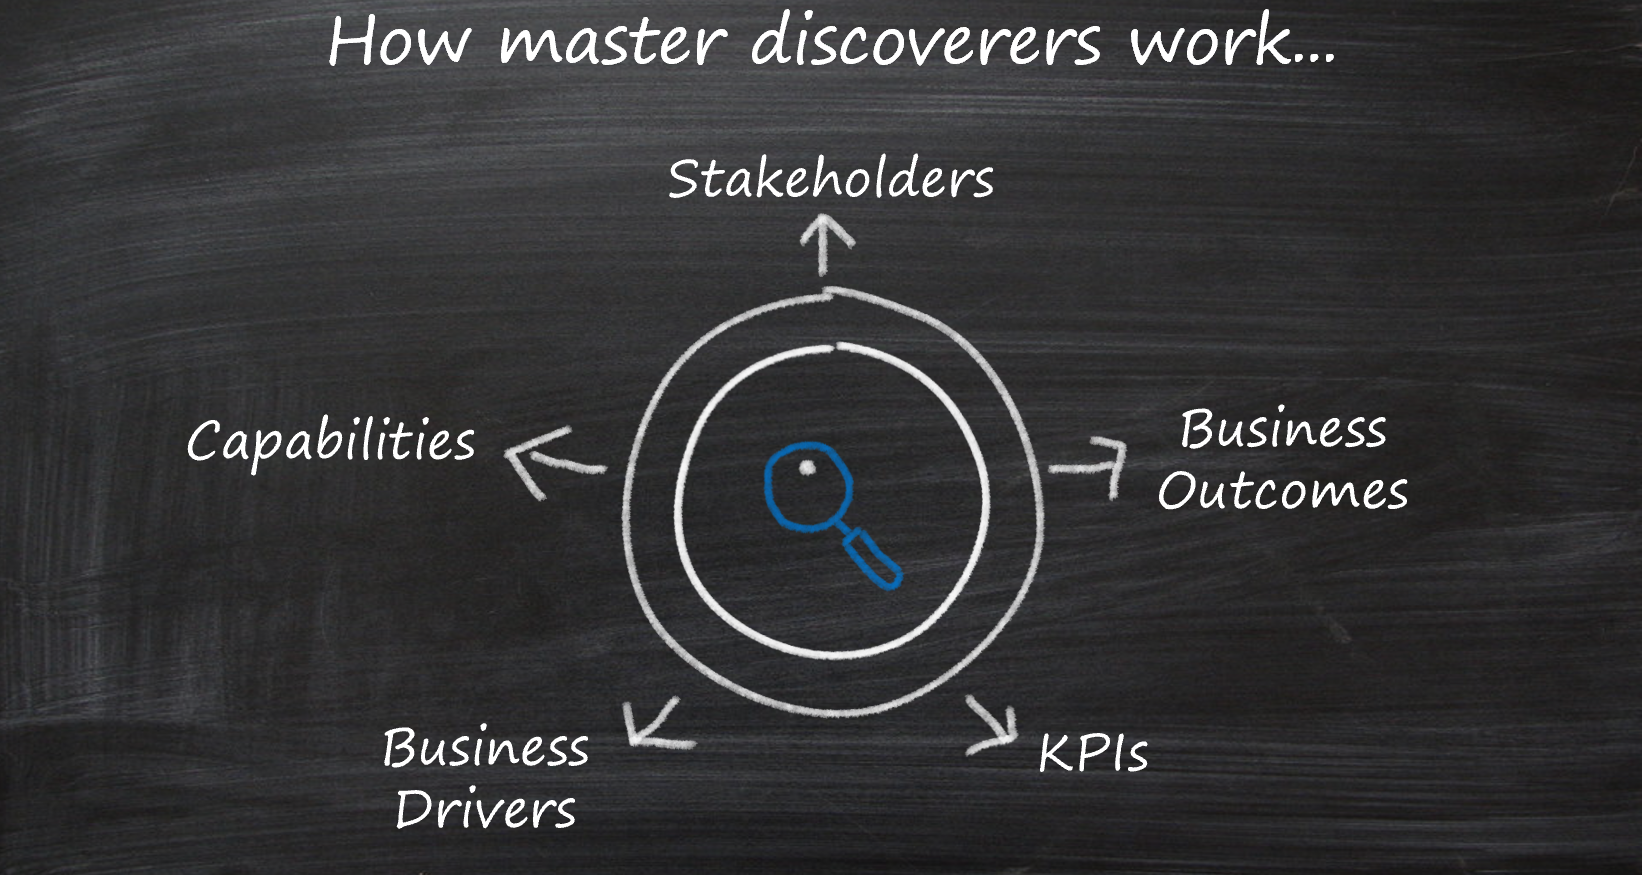 Lima bidang fokus dalam penemuan: pemangku kepentingan, hasil, driver, KPI, dan kemampuan